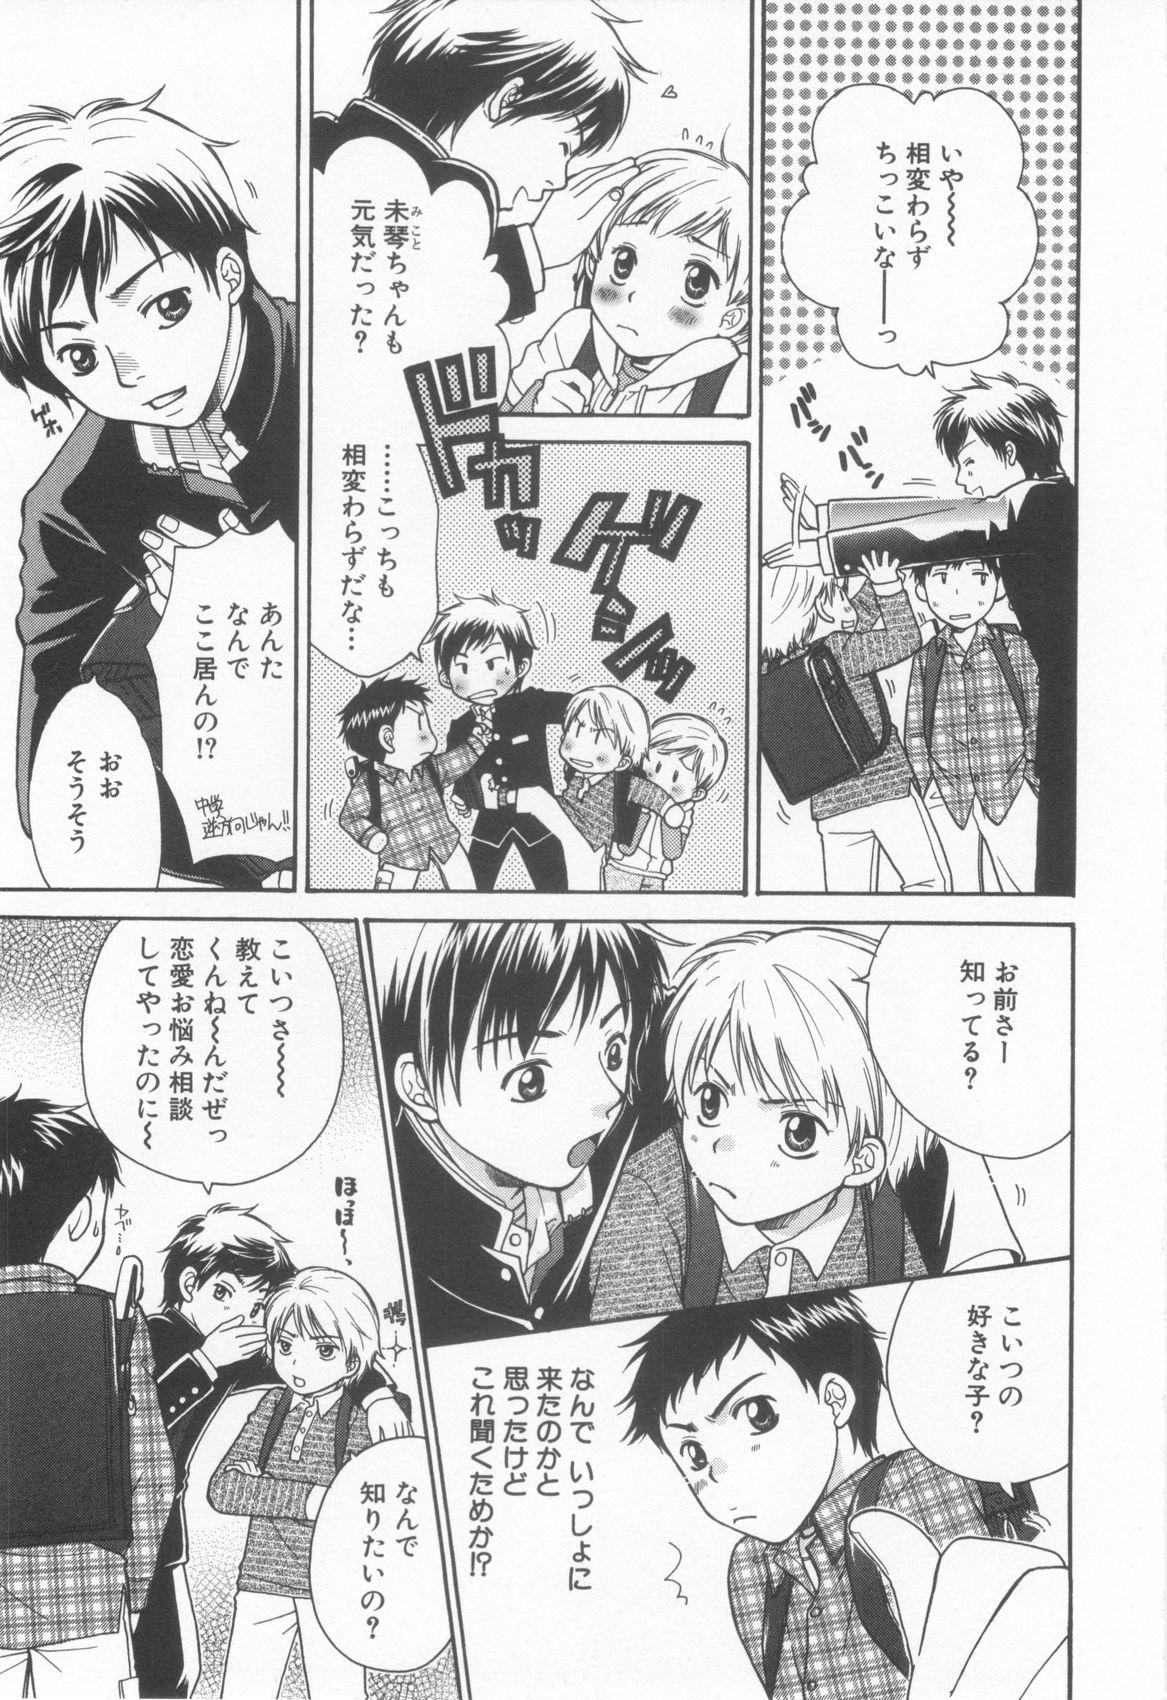 Groupsex Shota Tama Vol. 2 Gaygroupsex - Page 11